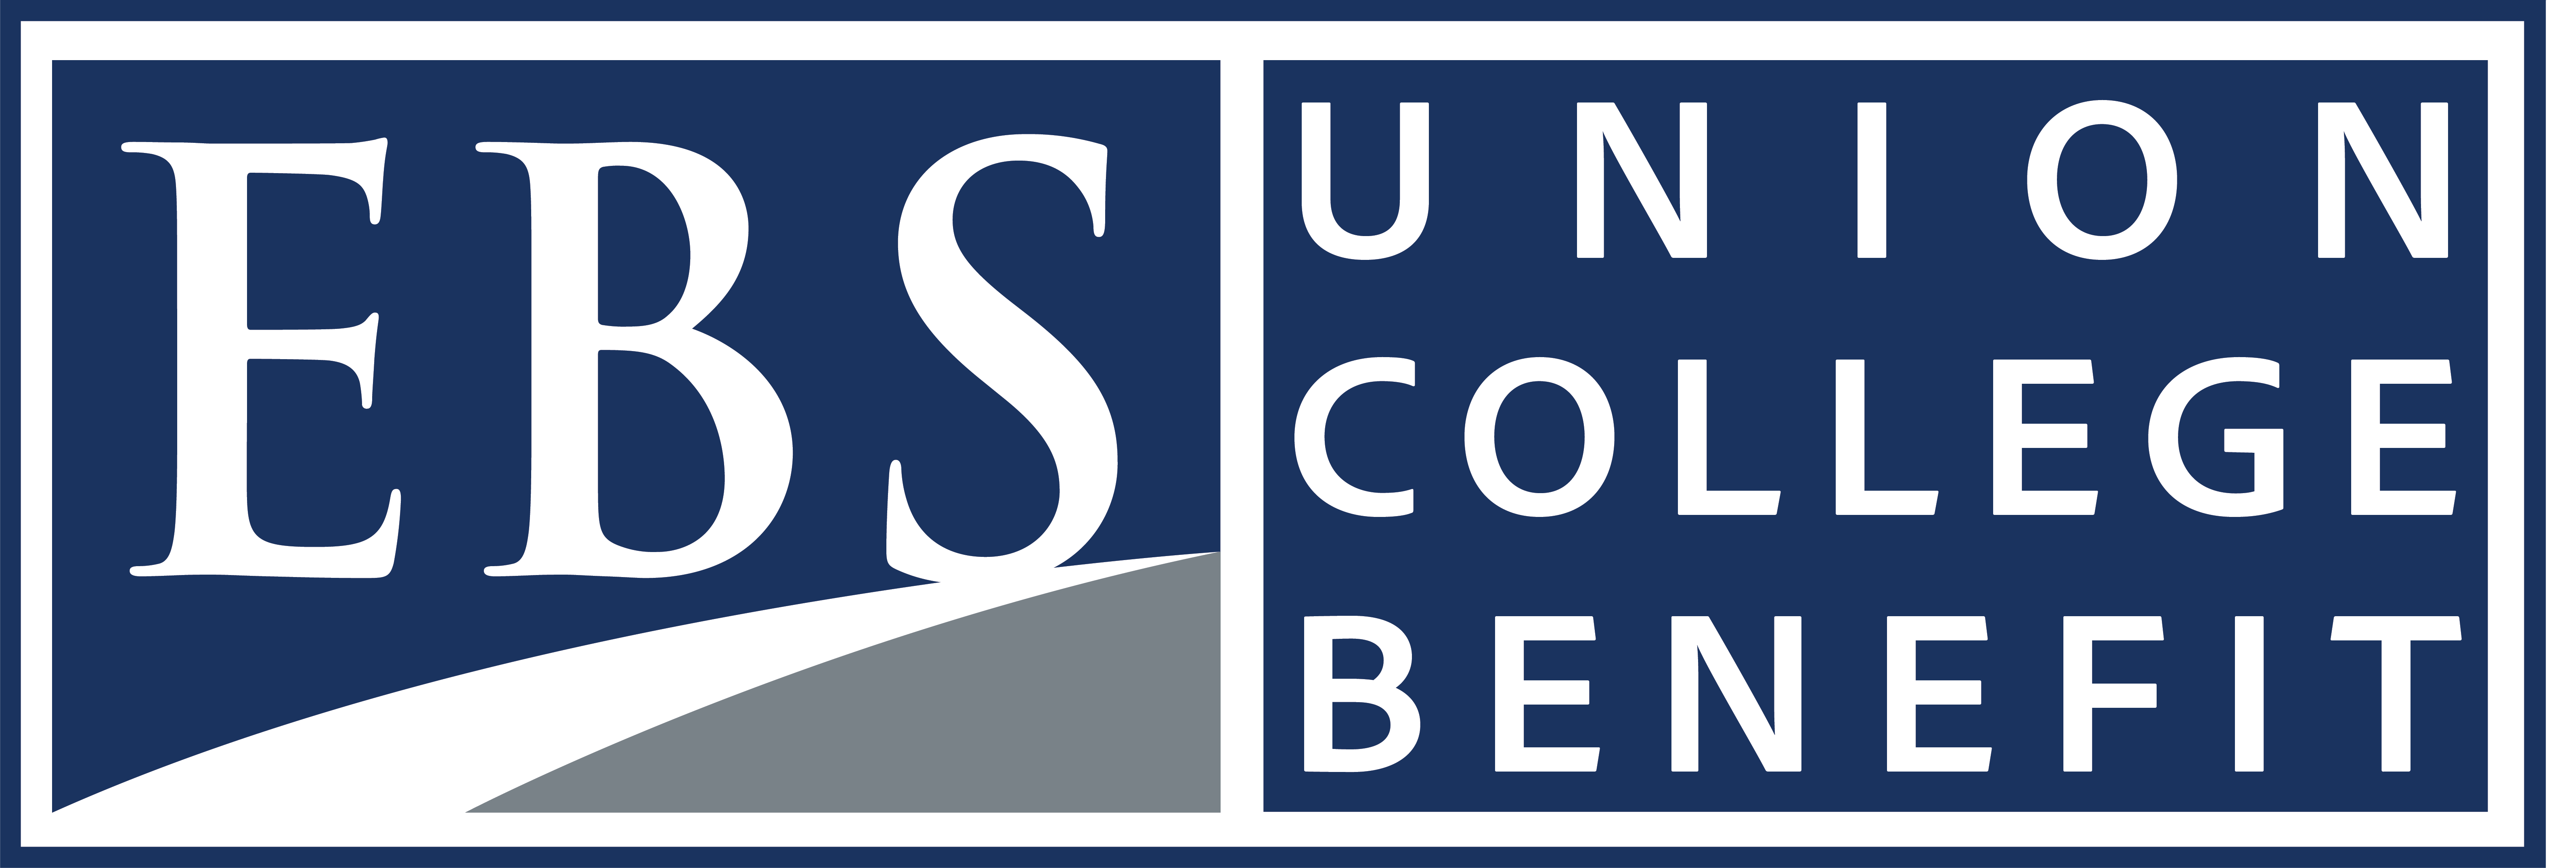 EBS-Union College Benefit LOGO V1